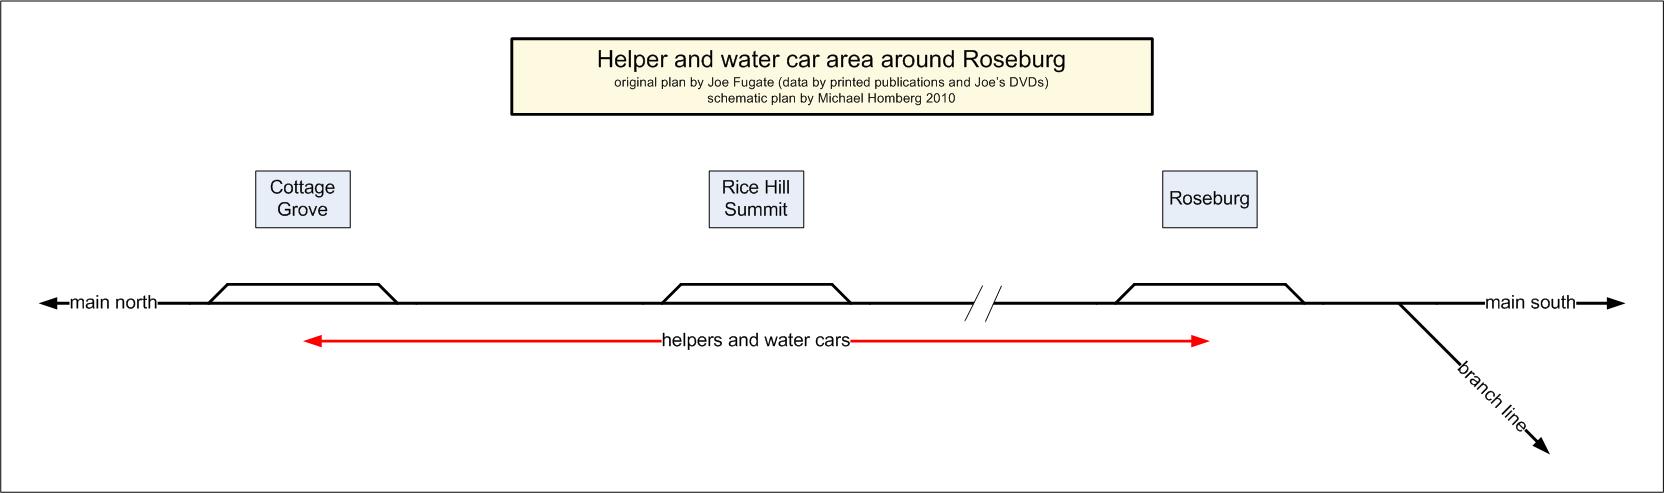 Roseburg_helper-distr.jpg